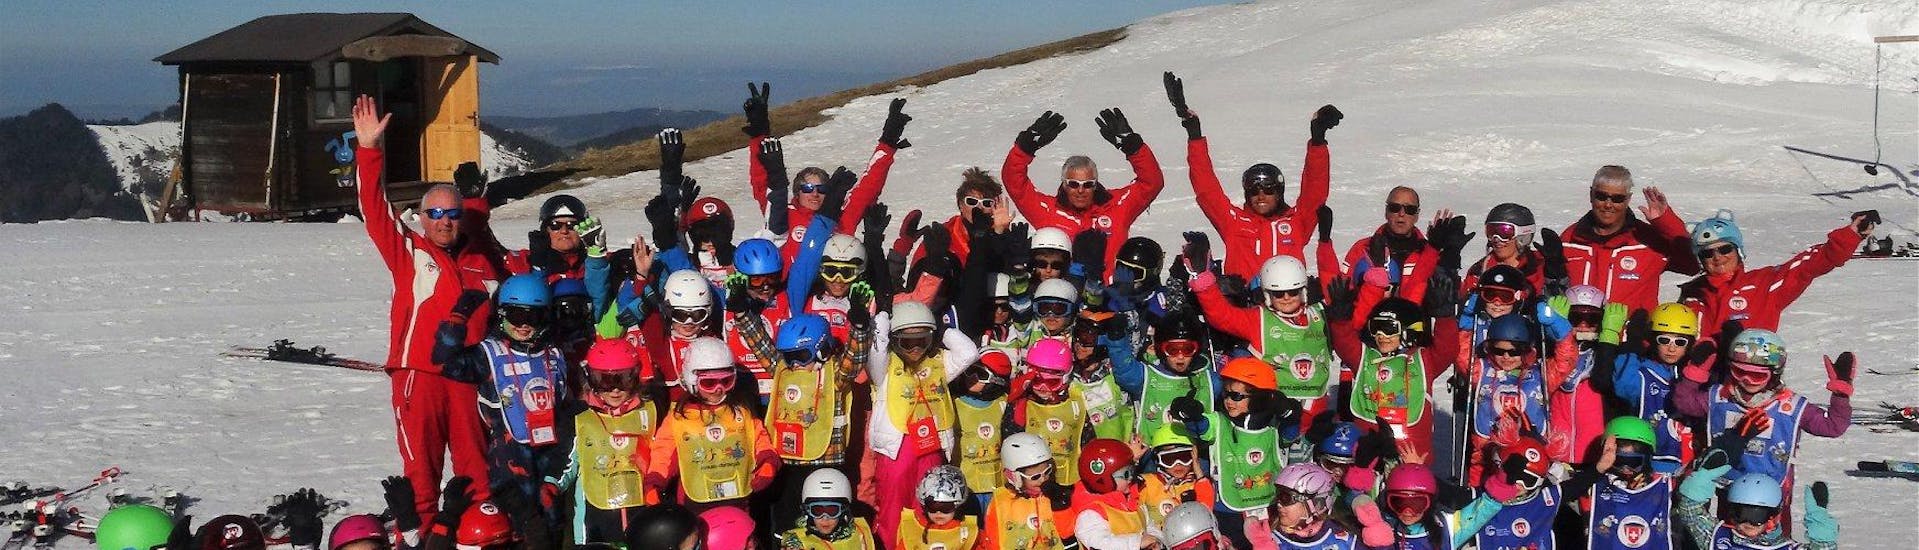 Des élèves de l'école de ski suisse Charmey et leurs moniteurs de ski sont réunis pour une photo de groupe afin de fêter leur Cours de ski Enfants (6-15 ans) - 1 cours.